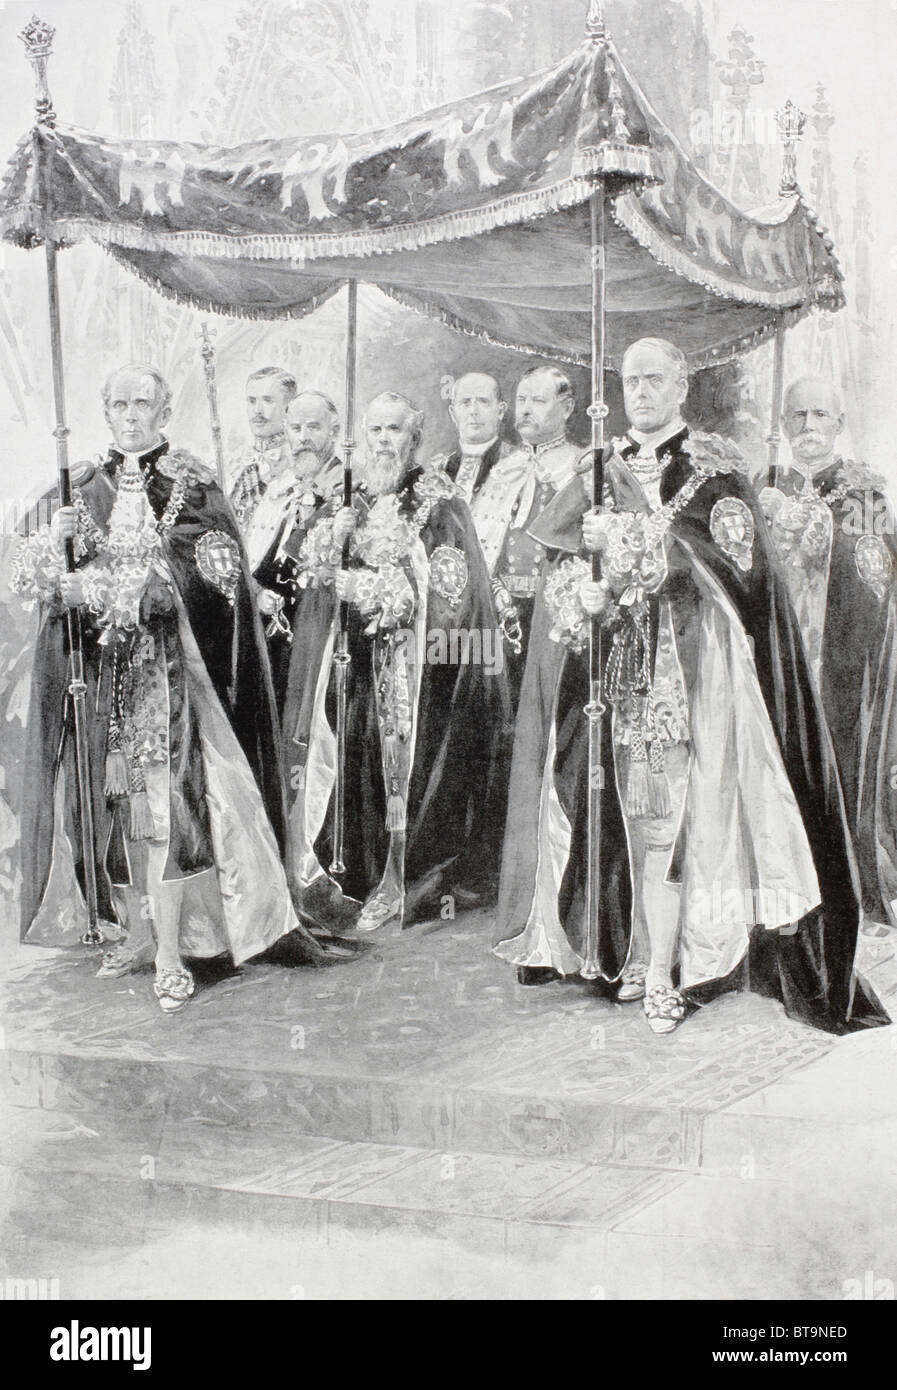 Les porteurs de l'auvent sur le roi George V, au cours de la cérémonie annointing à son couronnement en 1910. Banque D'Images